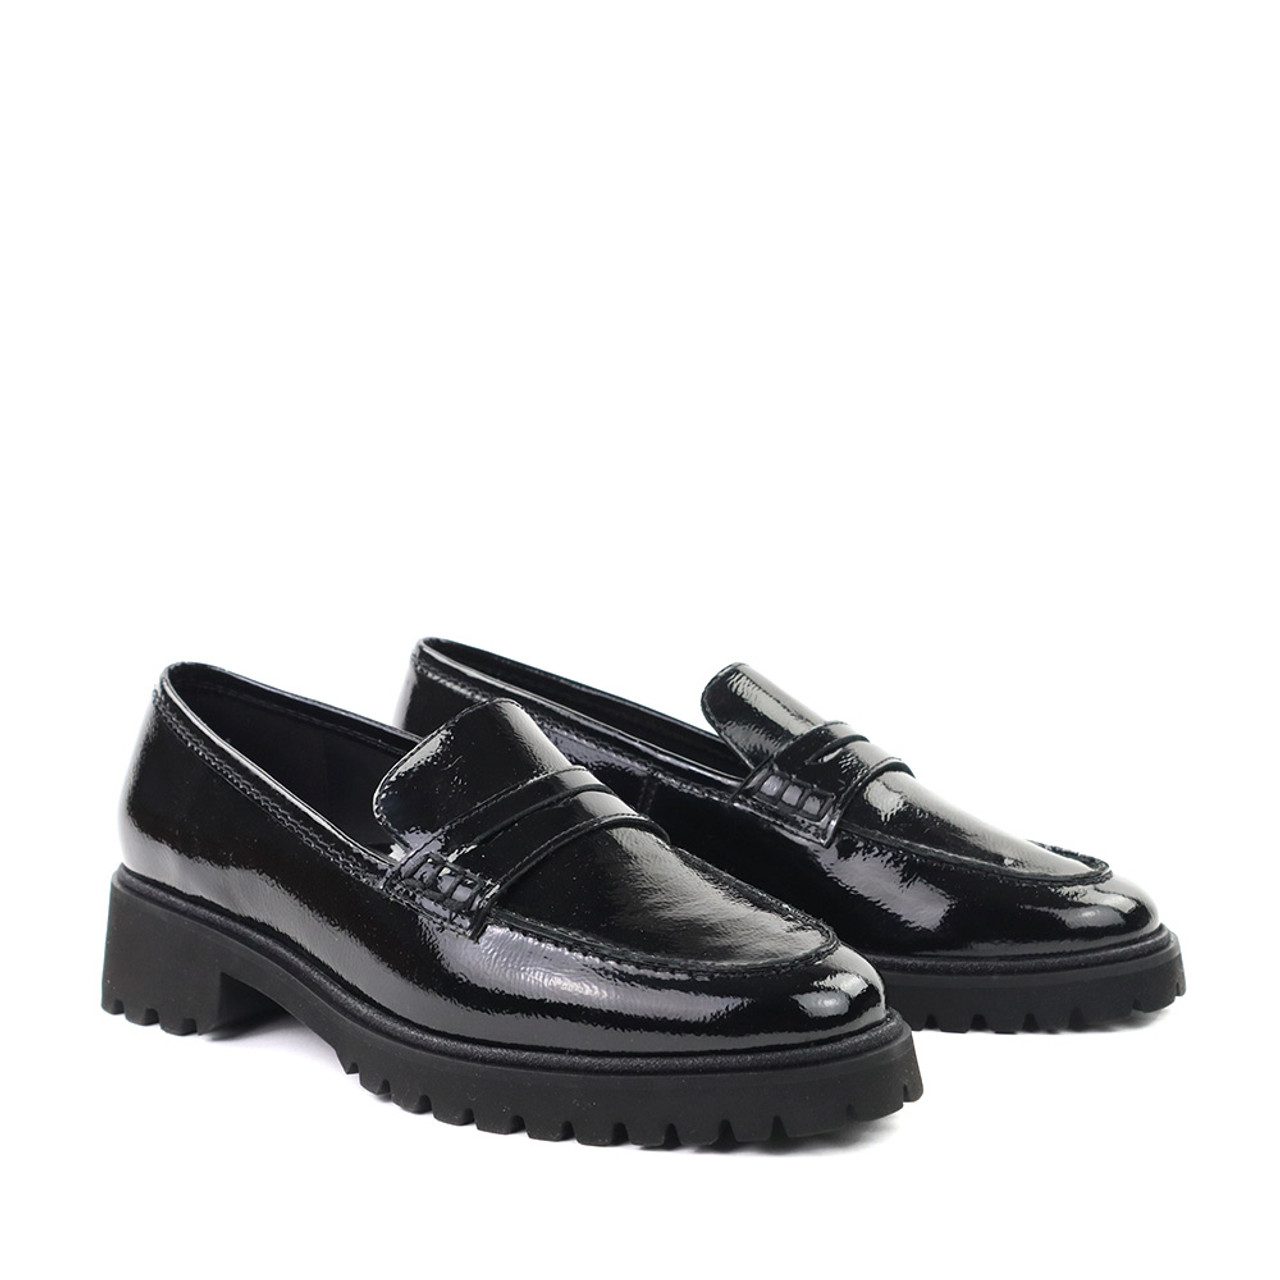 Ara Karina Shoe in black | Hanig's Footwear